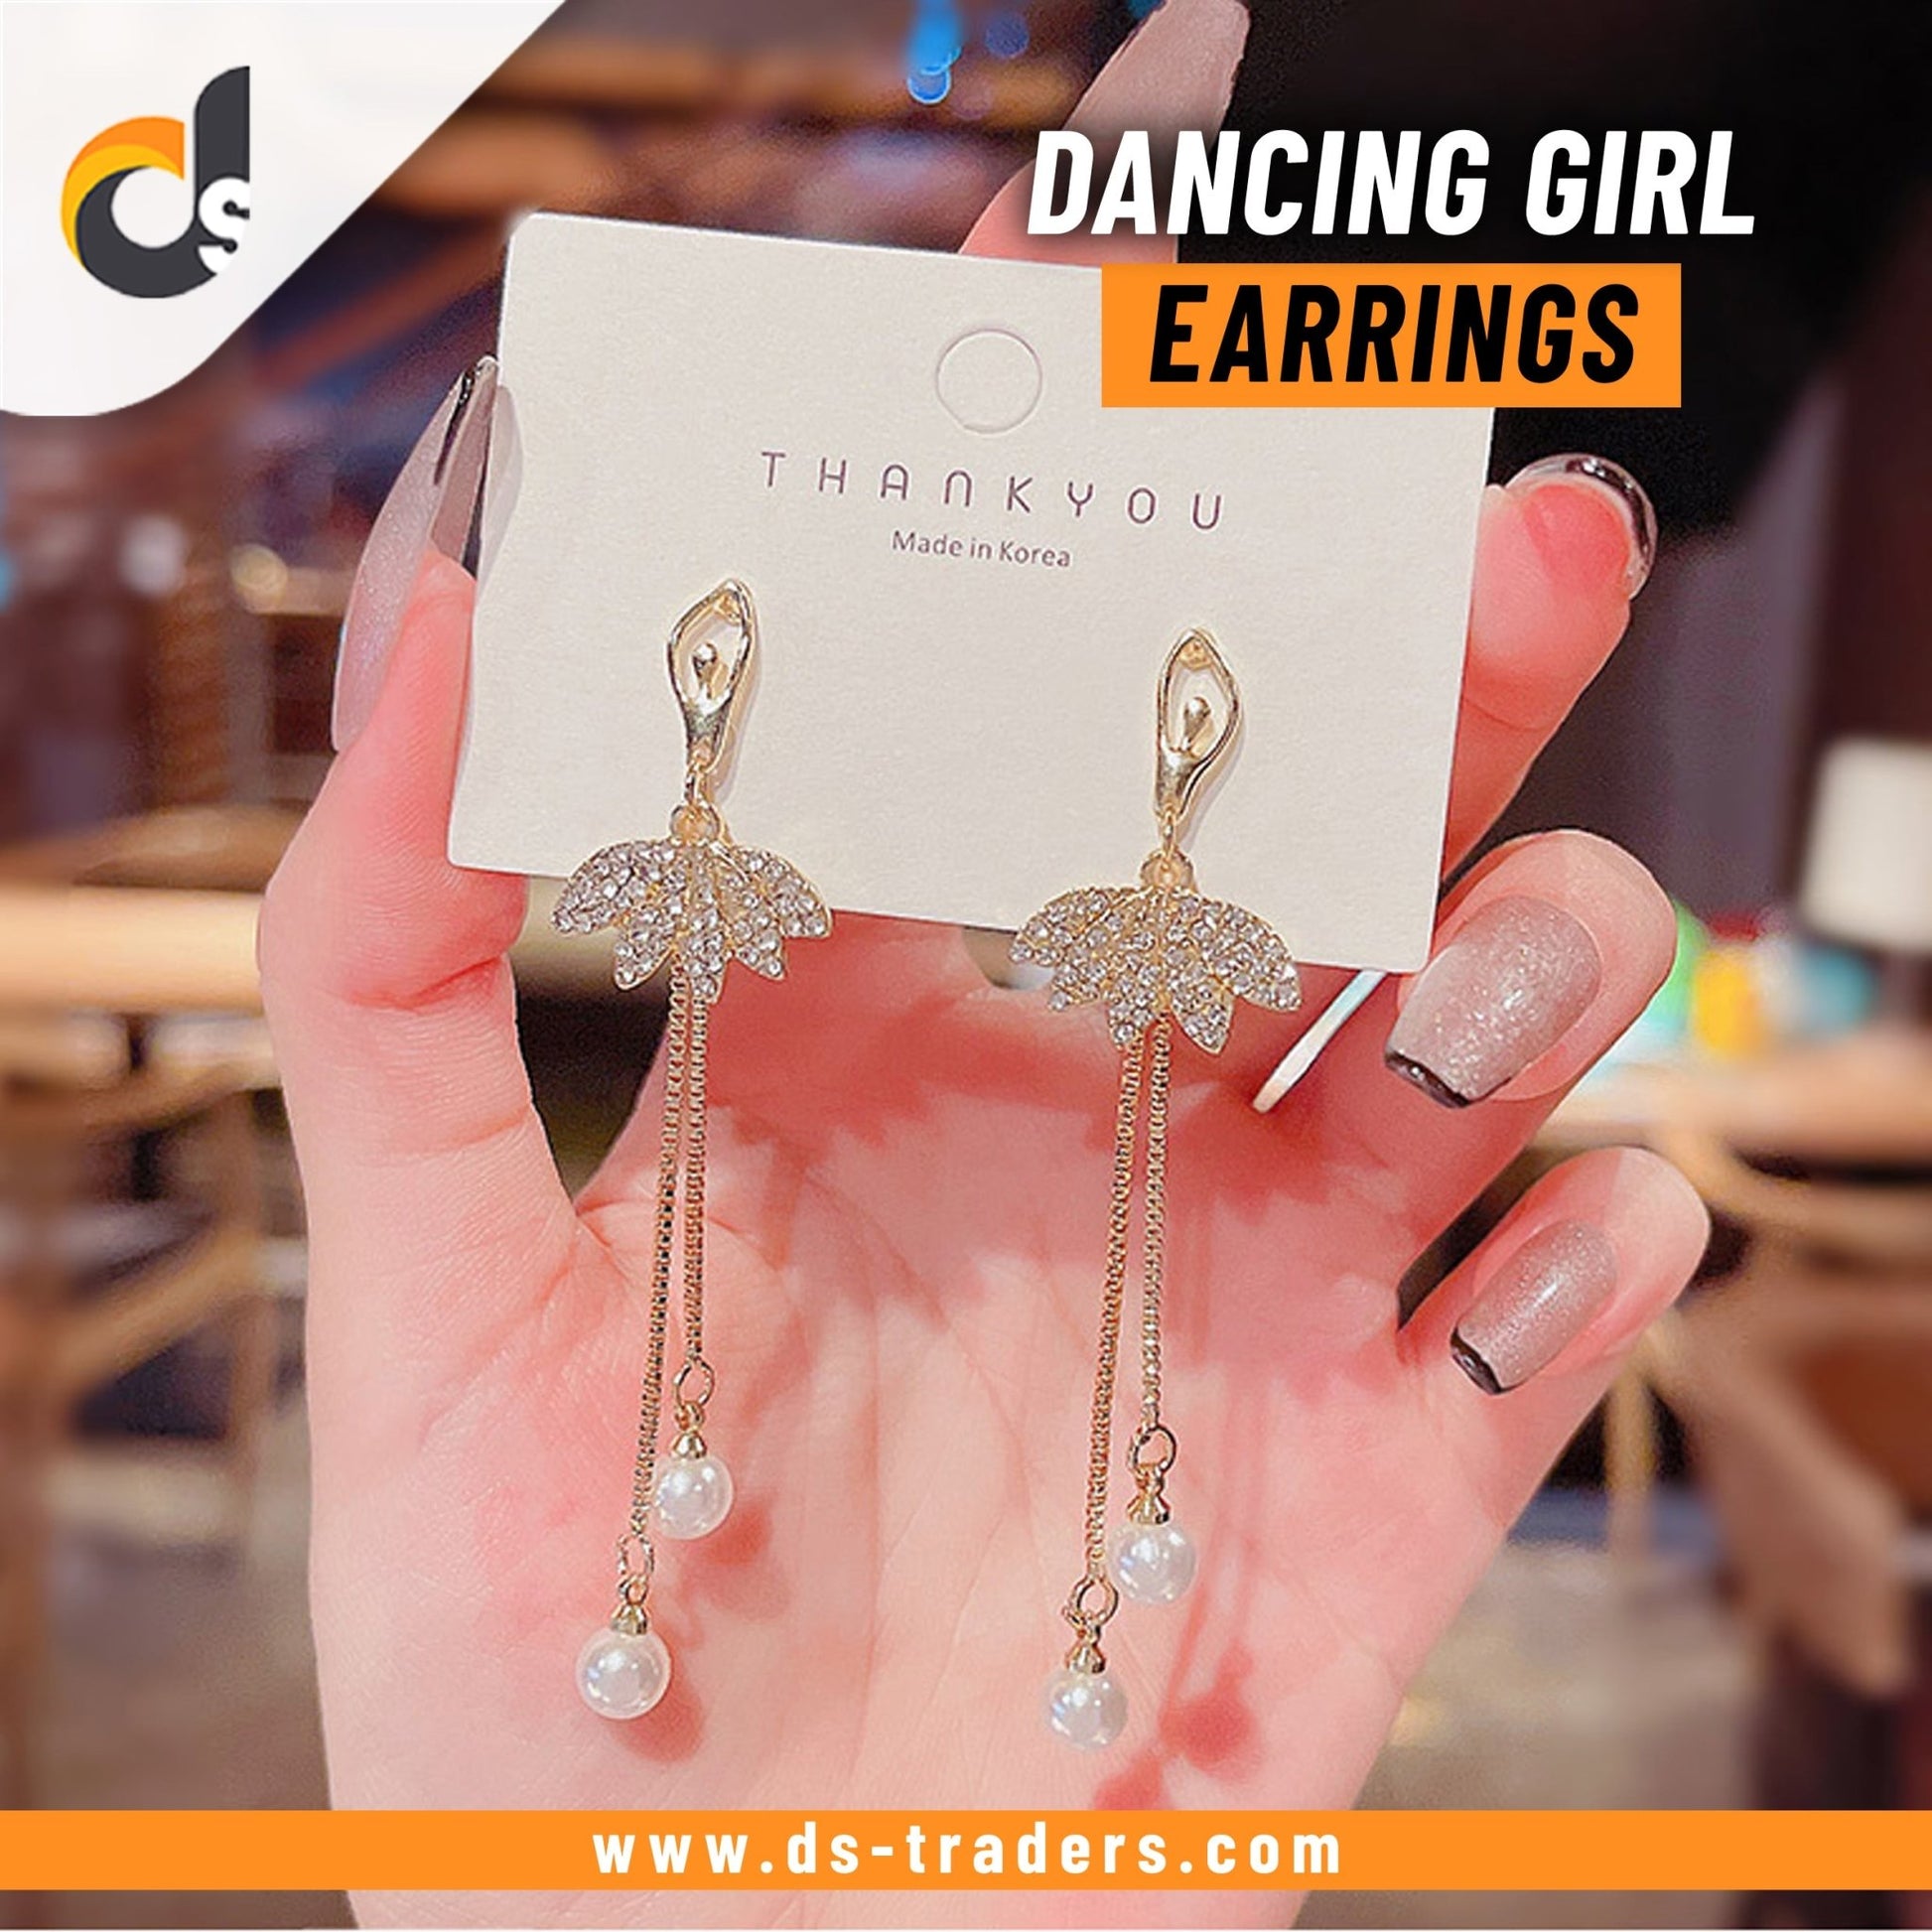 Dancing Girl Earrings - DS Traders